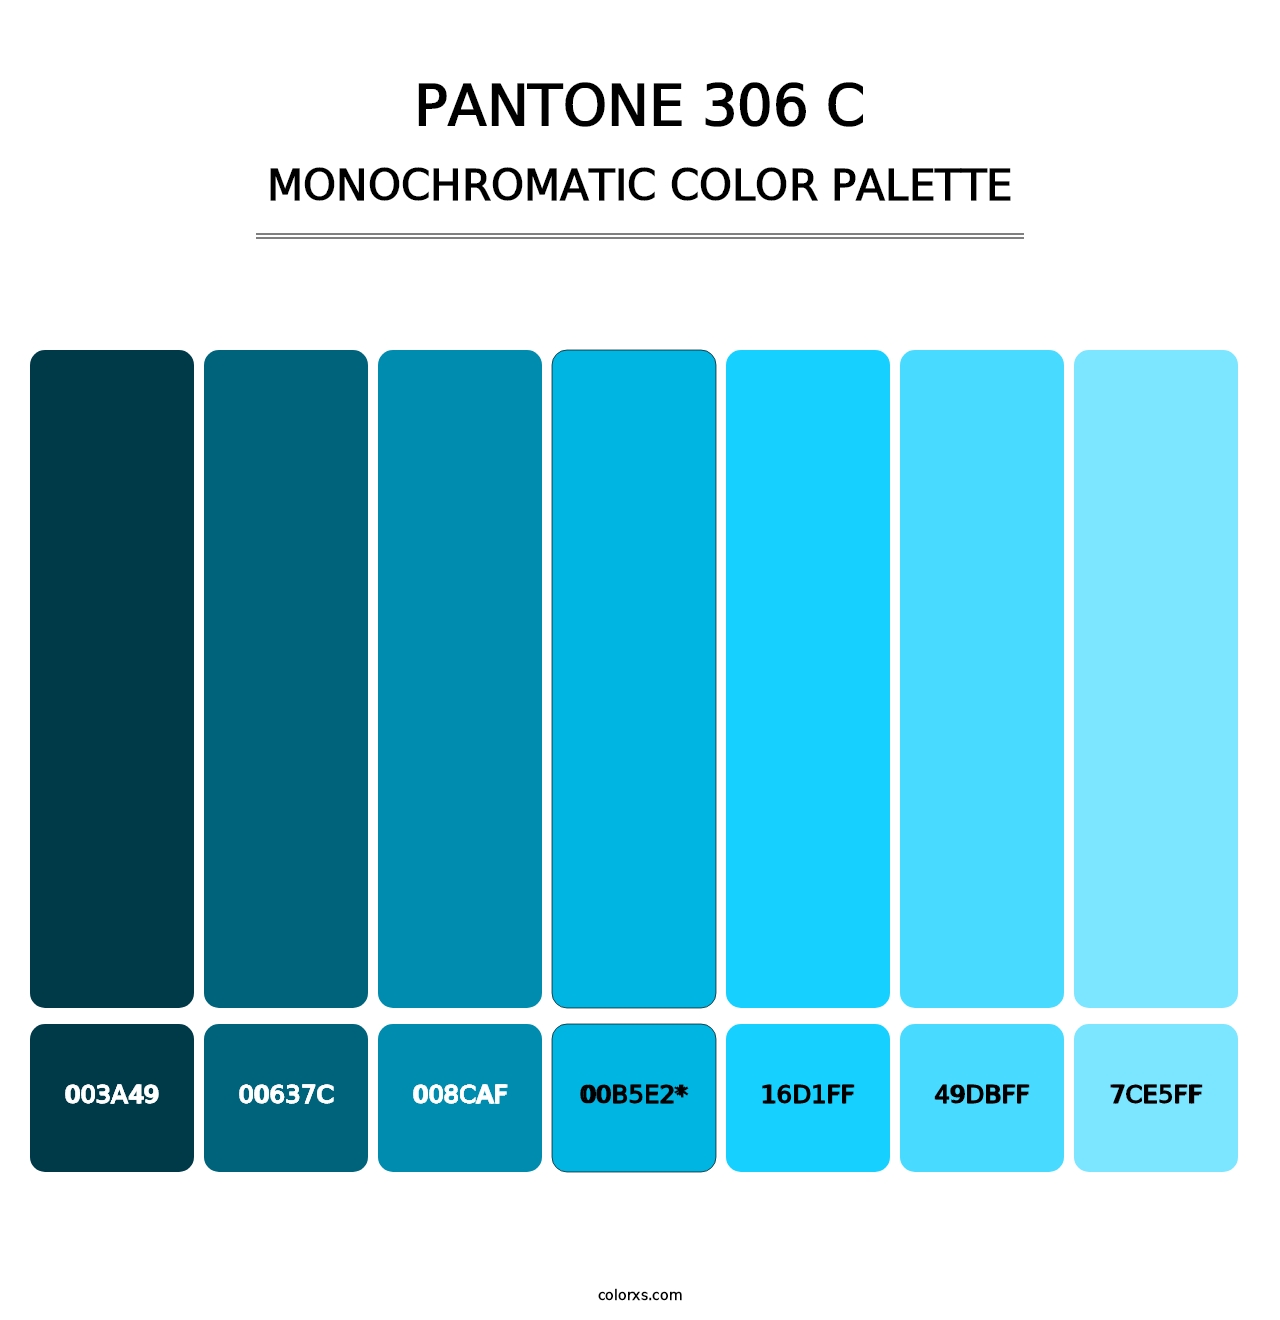 PANTONE 306 C - Monochromatic Color Palette